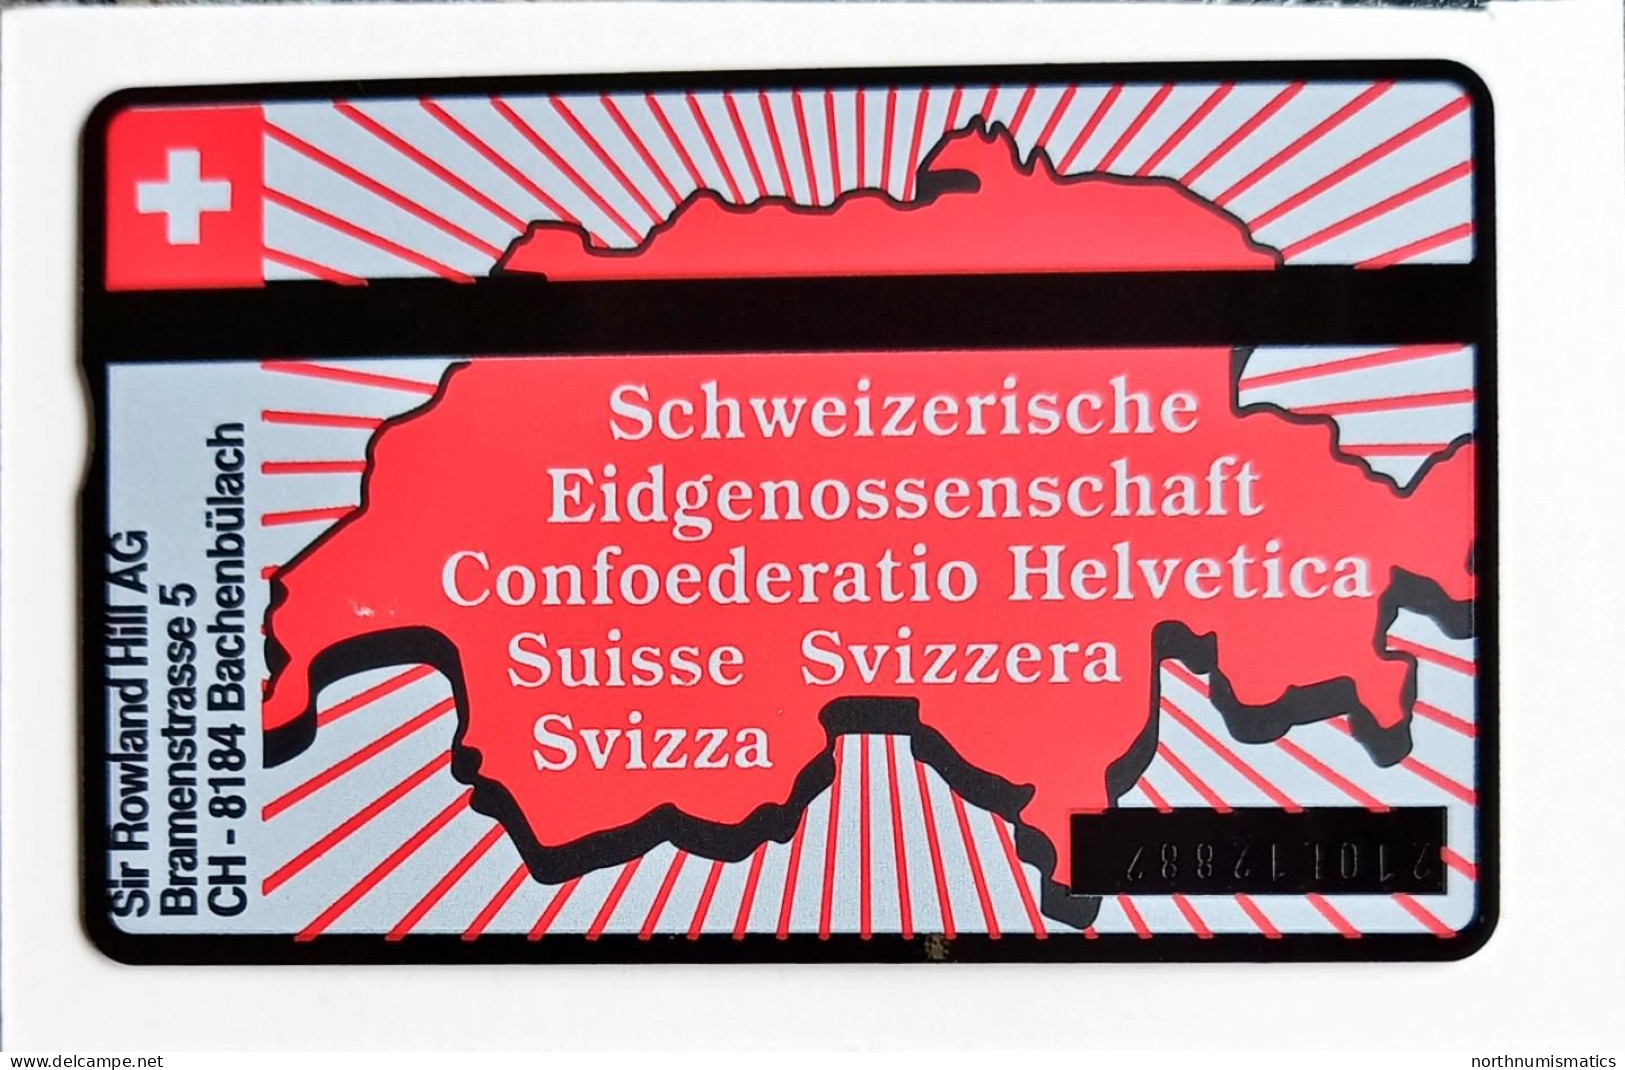 Swiss PTT Taxcard 1  Wilhelm Tell Mint 210L12882 - Collections